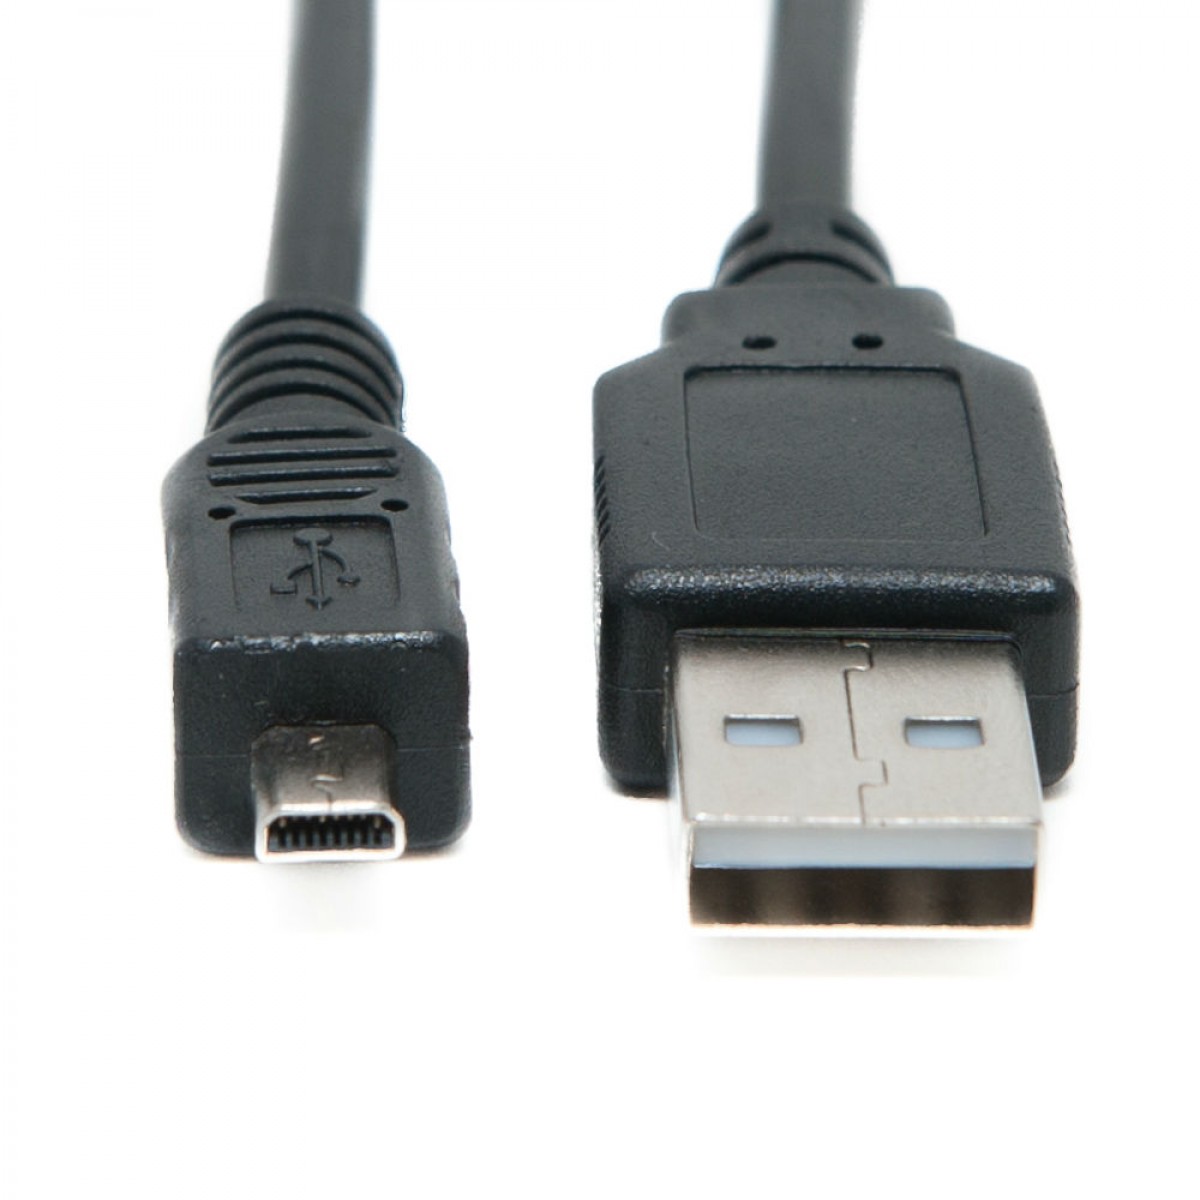 De datos USB Sync transferencia imagen Lead Cable Para Olympus Fe-280 